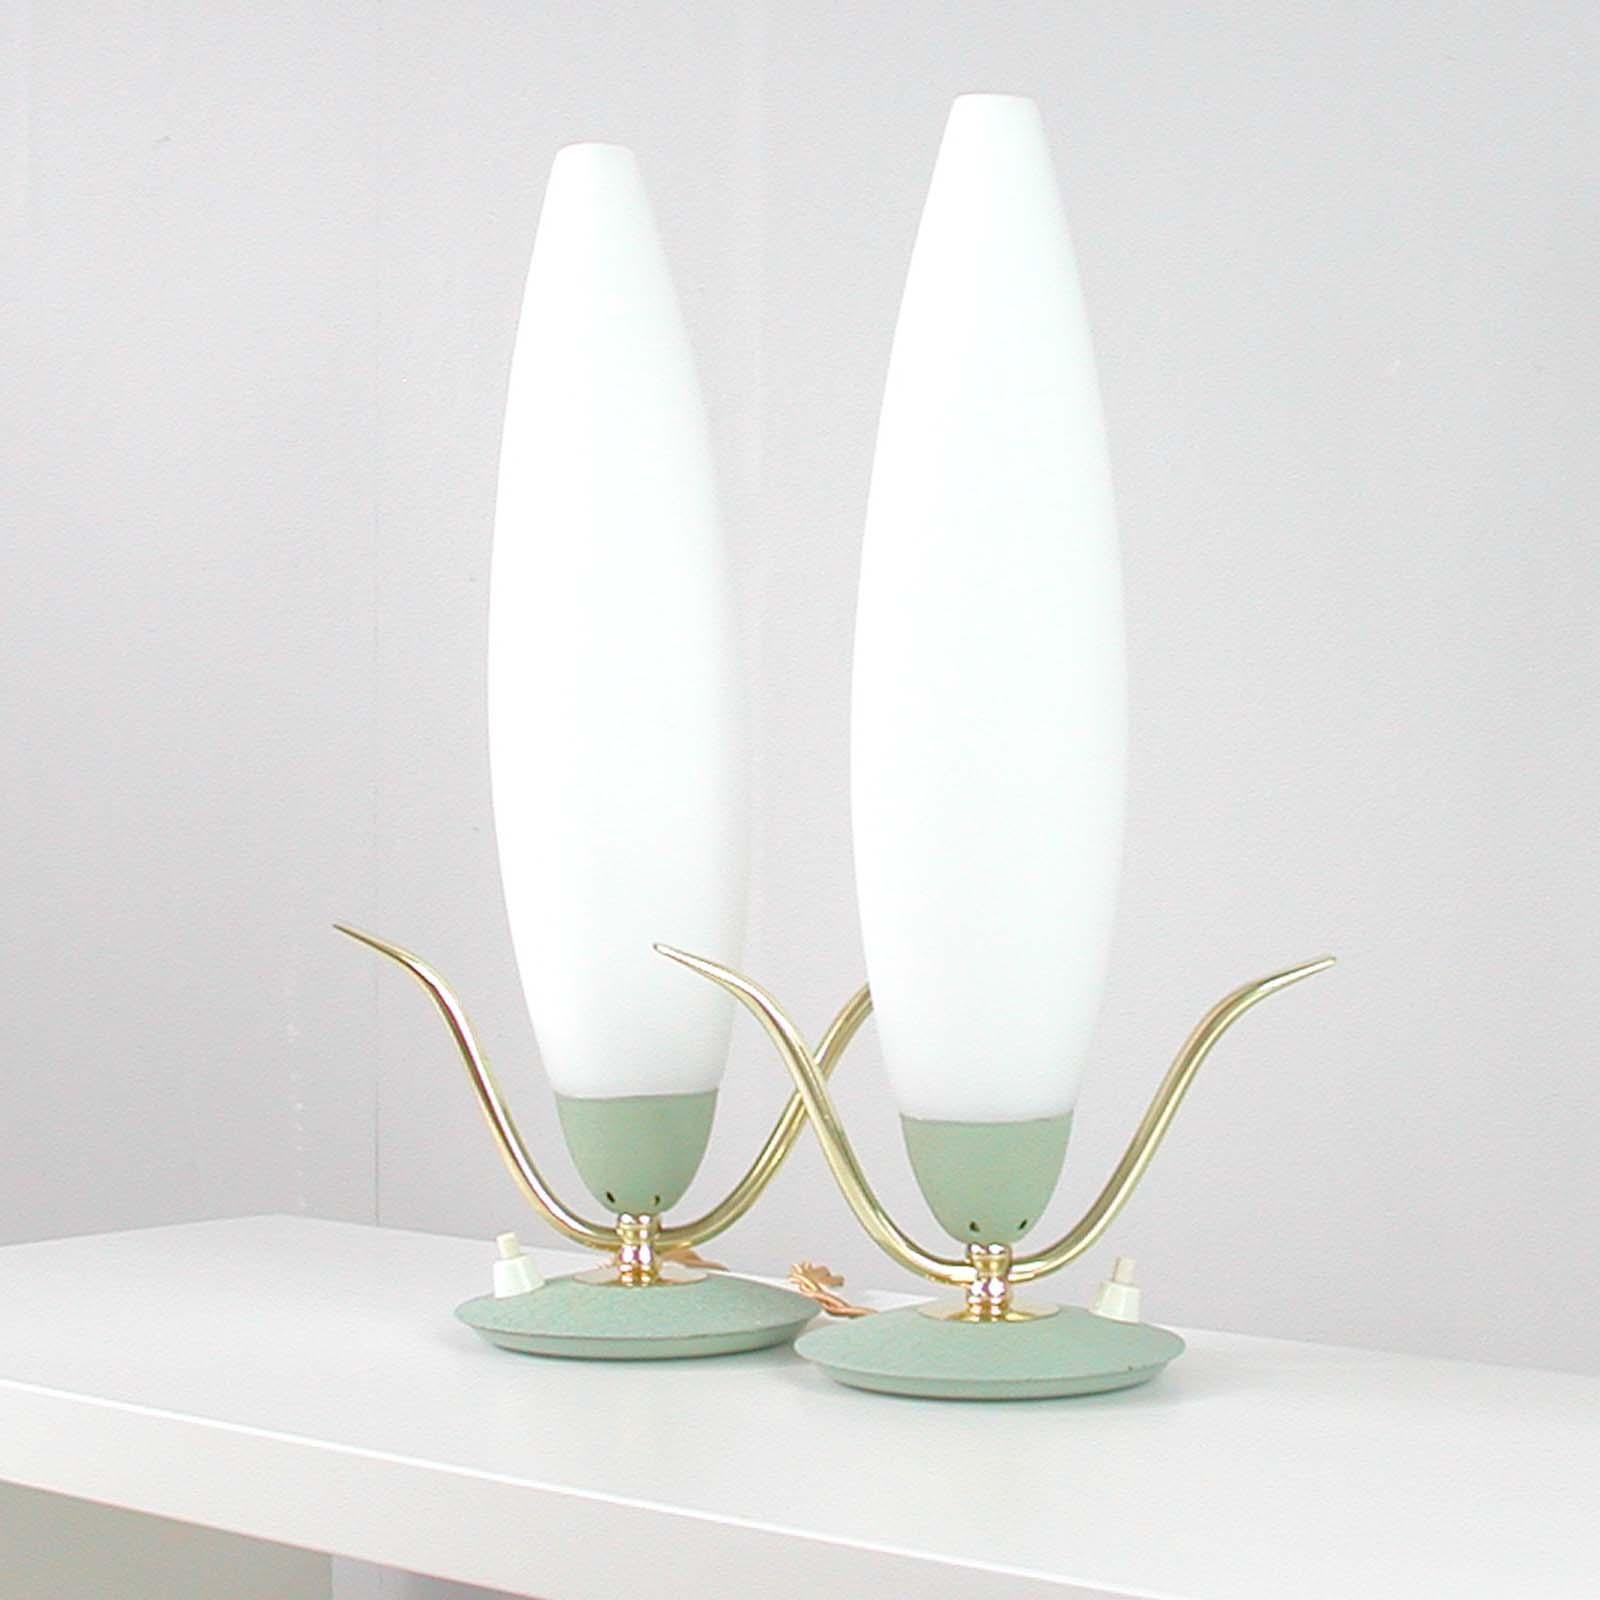 Cet ensemble de 2 lampes de table a été fabriqué en Italie dans les années 1950. 

Les lampes sont réalisées en métal et laiton laqué vert menthe clair et ont des abat-jour en verre opalin de style fusée.

Les lampes ont été polies, recâblées et